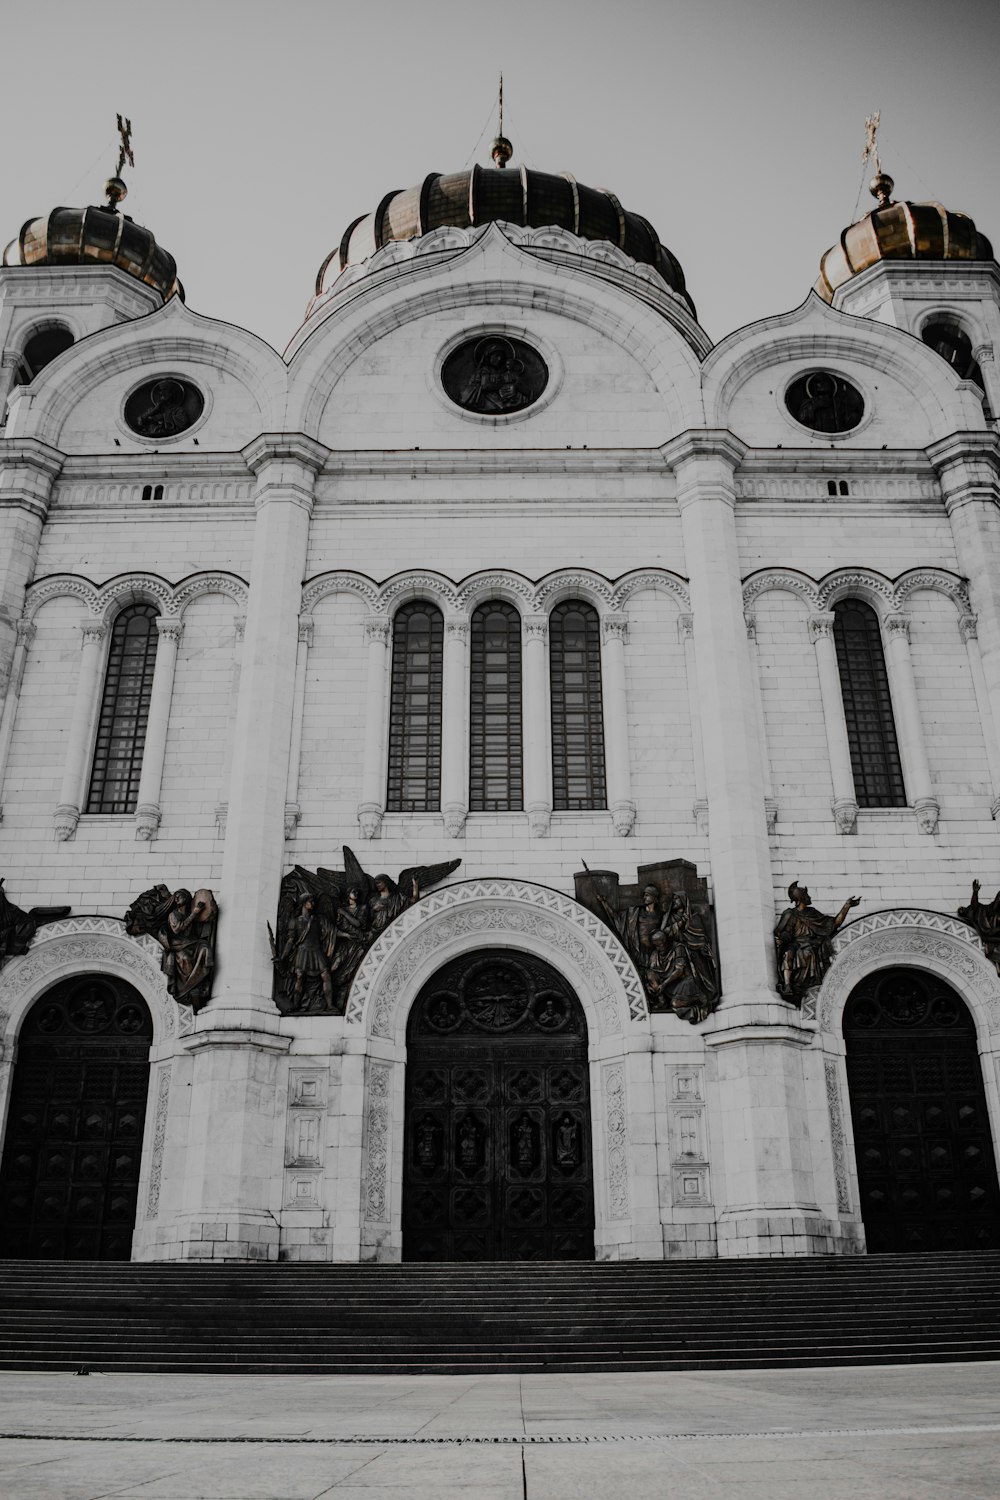 Una foto en blanco y negro de una iglesia